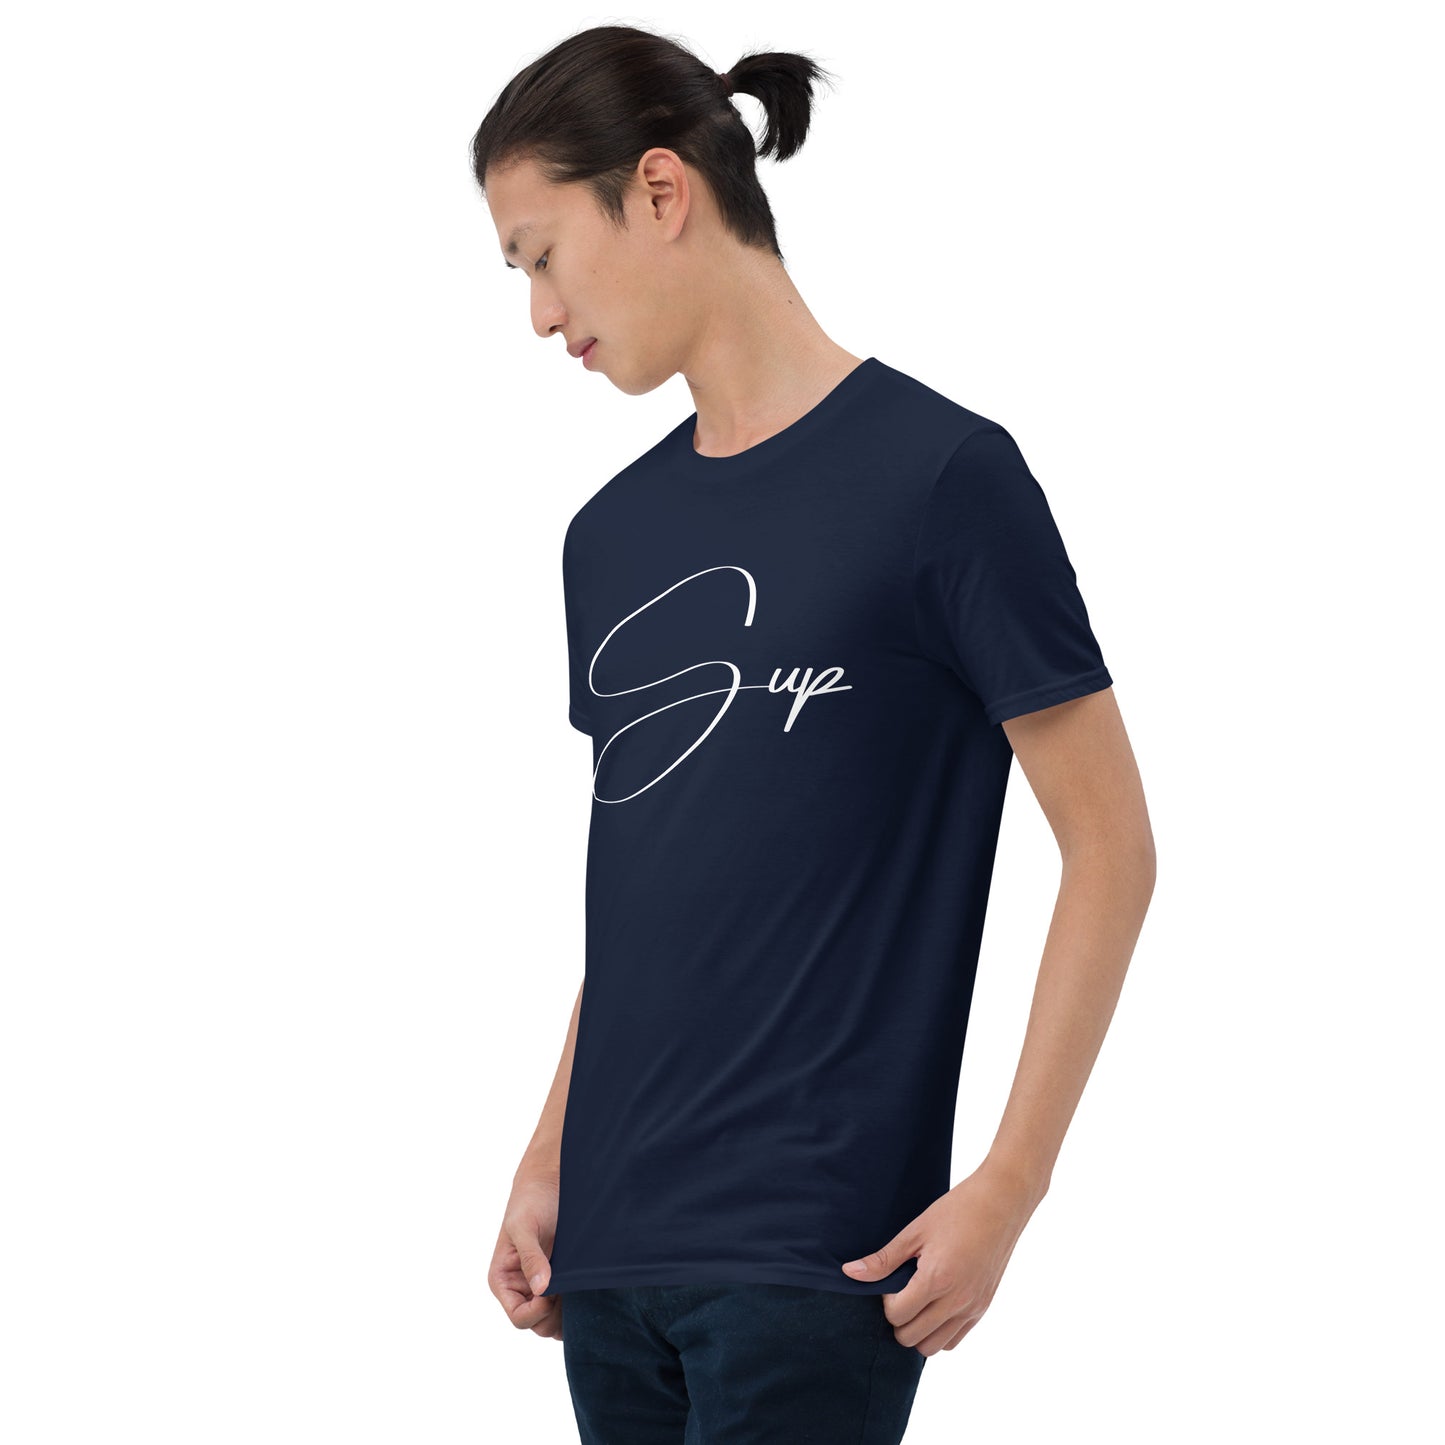 Short-Sleeve Unisex "Sup" T-Shirt